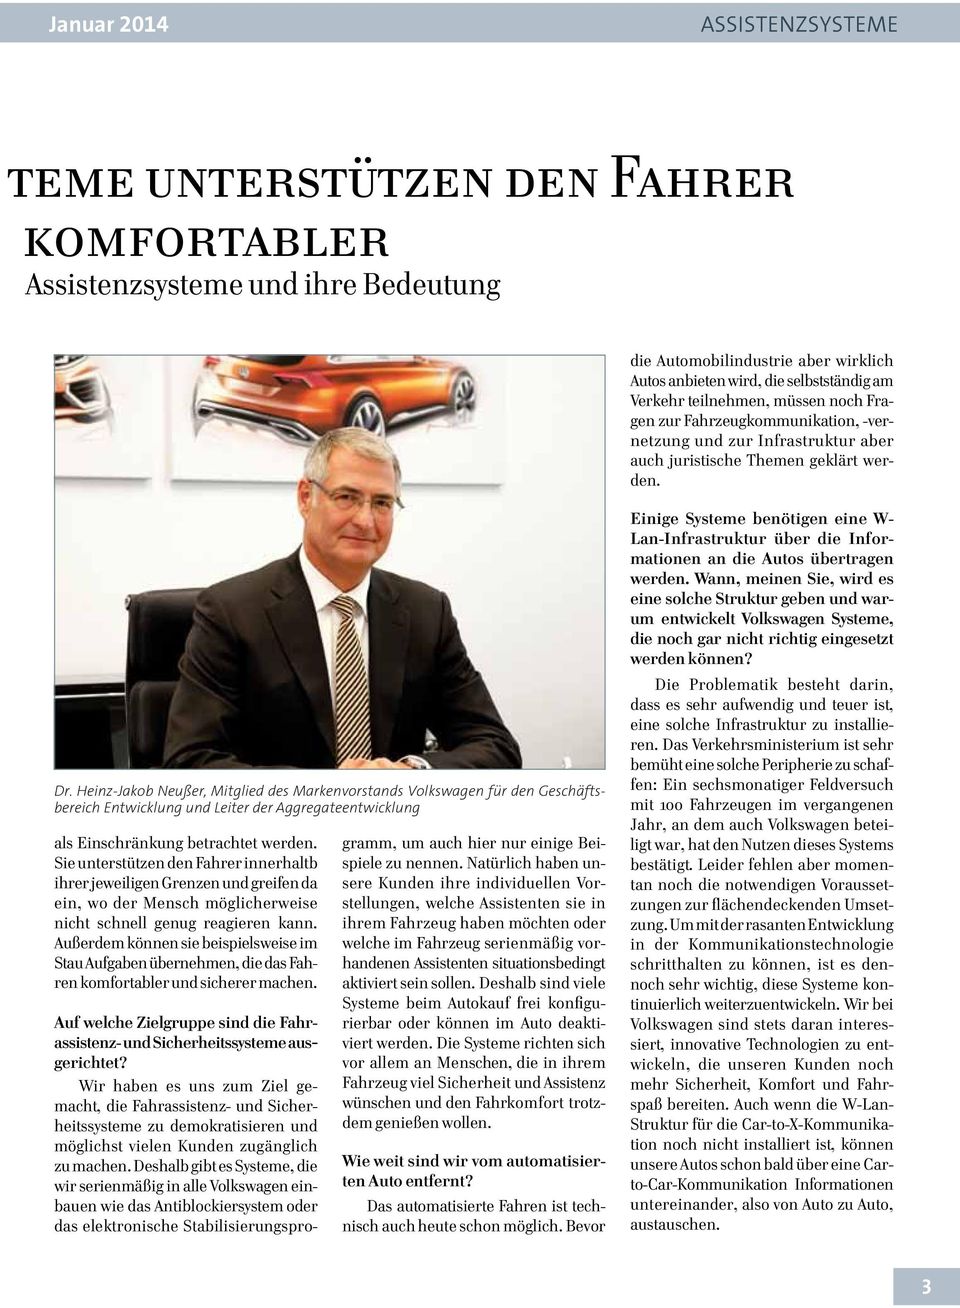 Heinz-Jakob Neußer, Mitglied des Markenvorstands Volkswagen für den Geschäftsbereich Entwicklung und Leiter der Aggregateentwicklung als Einschränkung betrachtet werden.